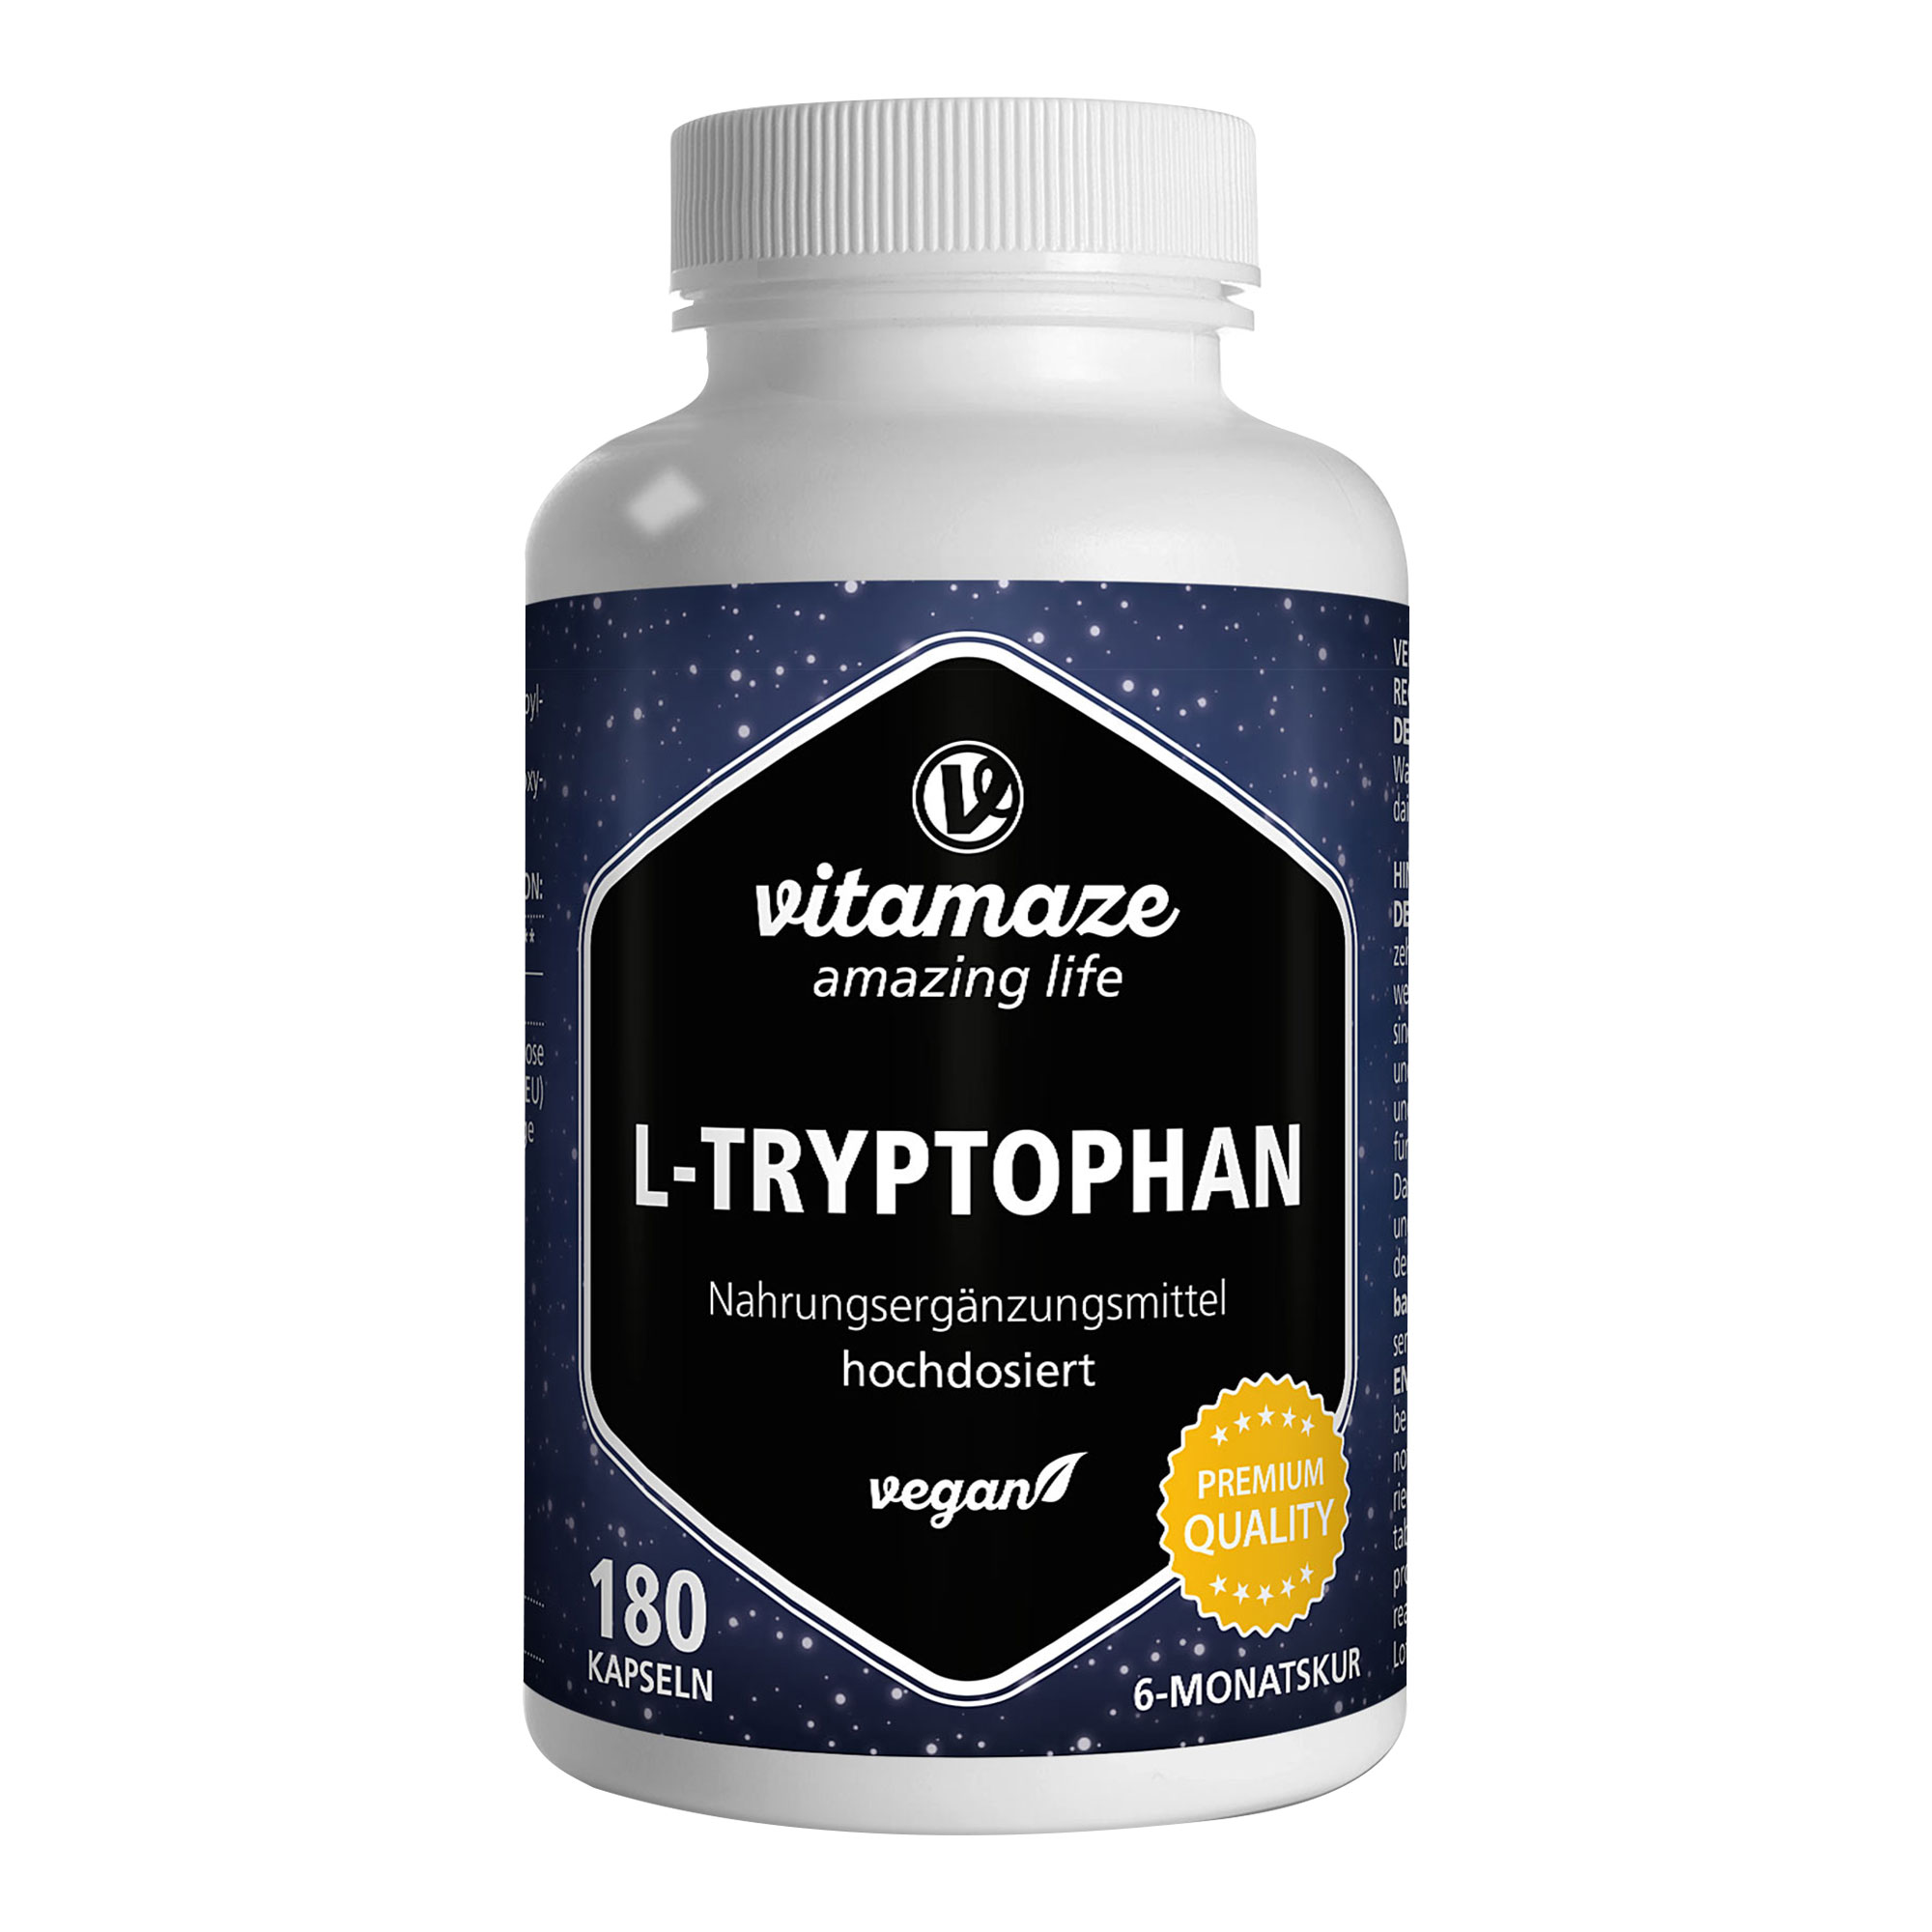 Nahrungsergänzungsmittel mit hochdosiertem L-Tryptophan. Für 6 Monate Dauerversorgung.